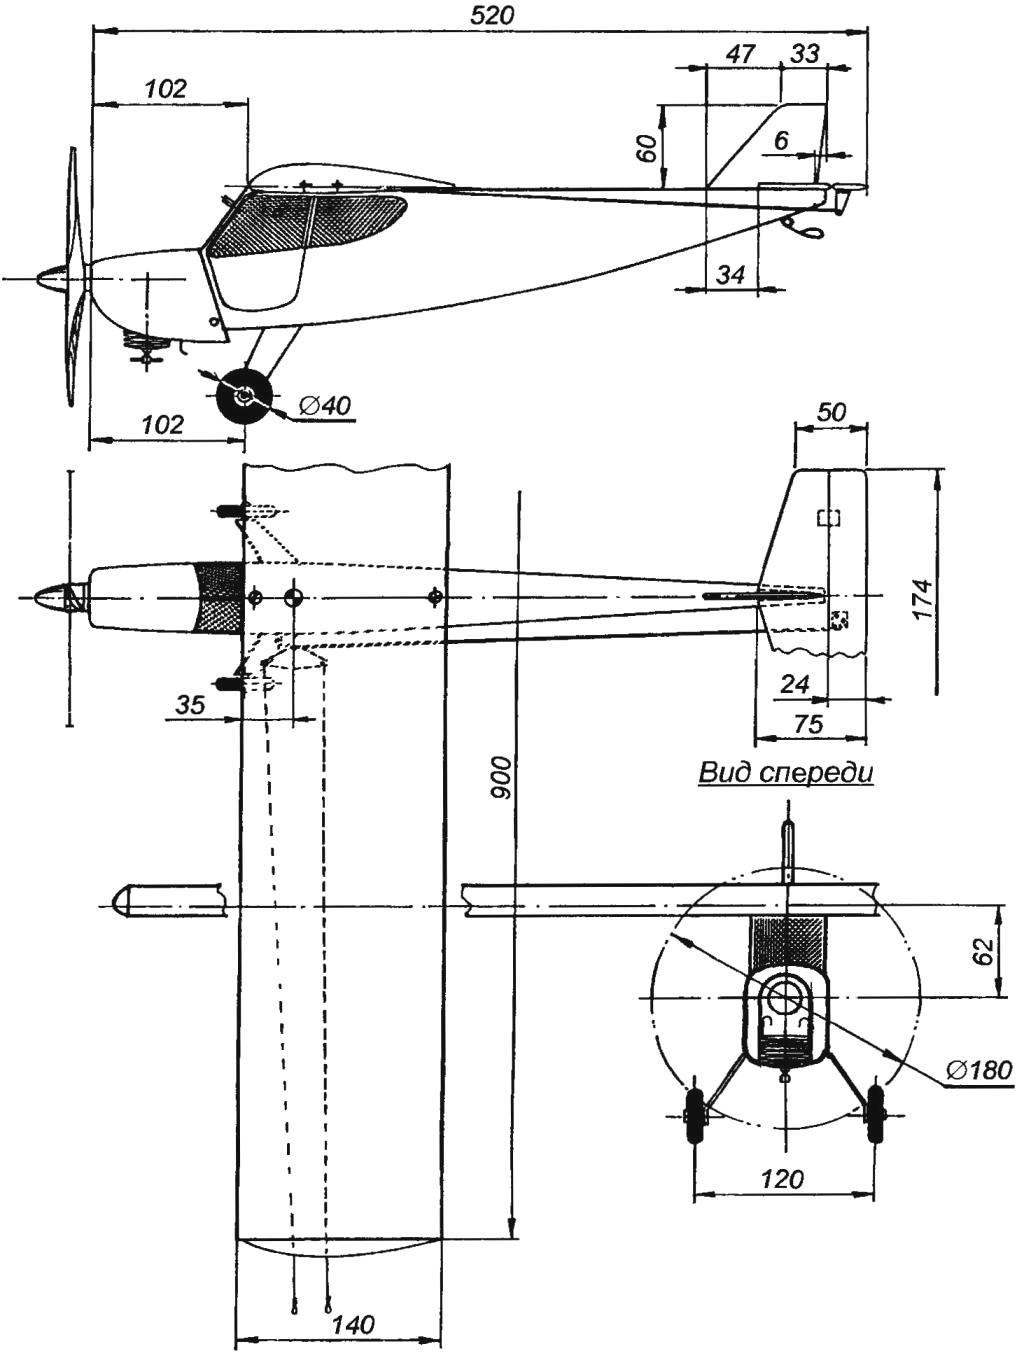 Геометрическая схема кордовой модели самолета-высокоплана с двигателем МК-17